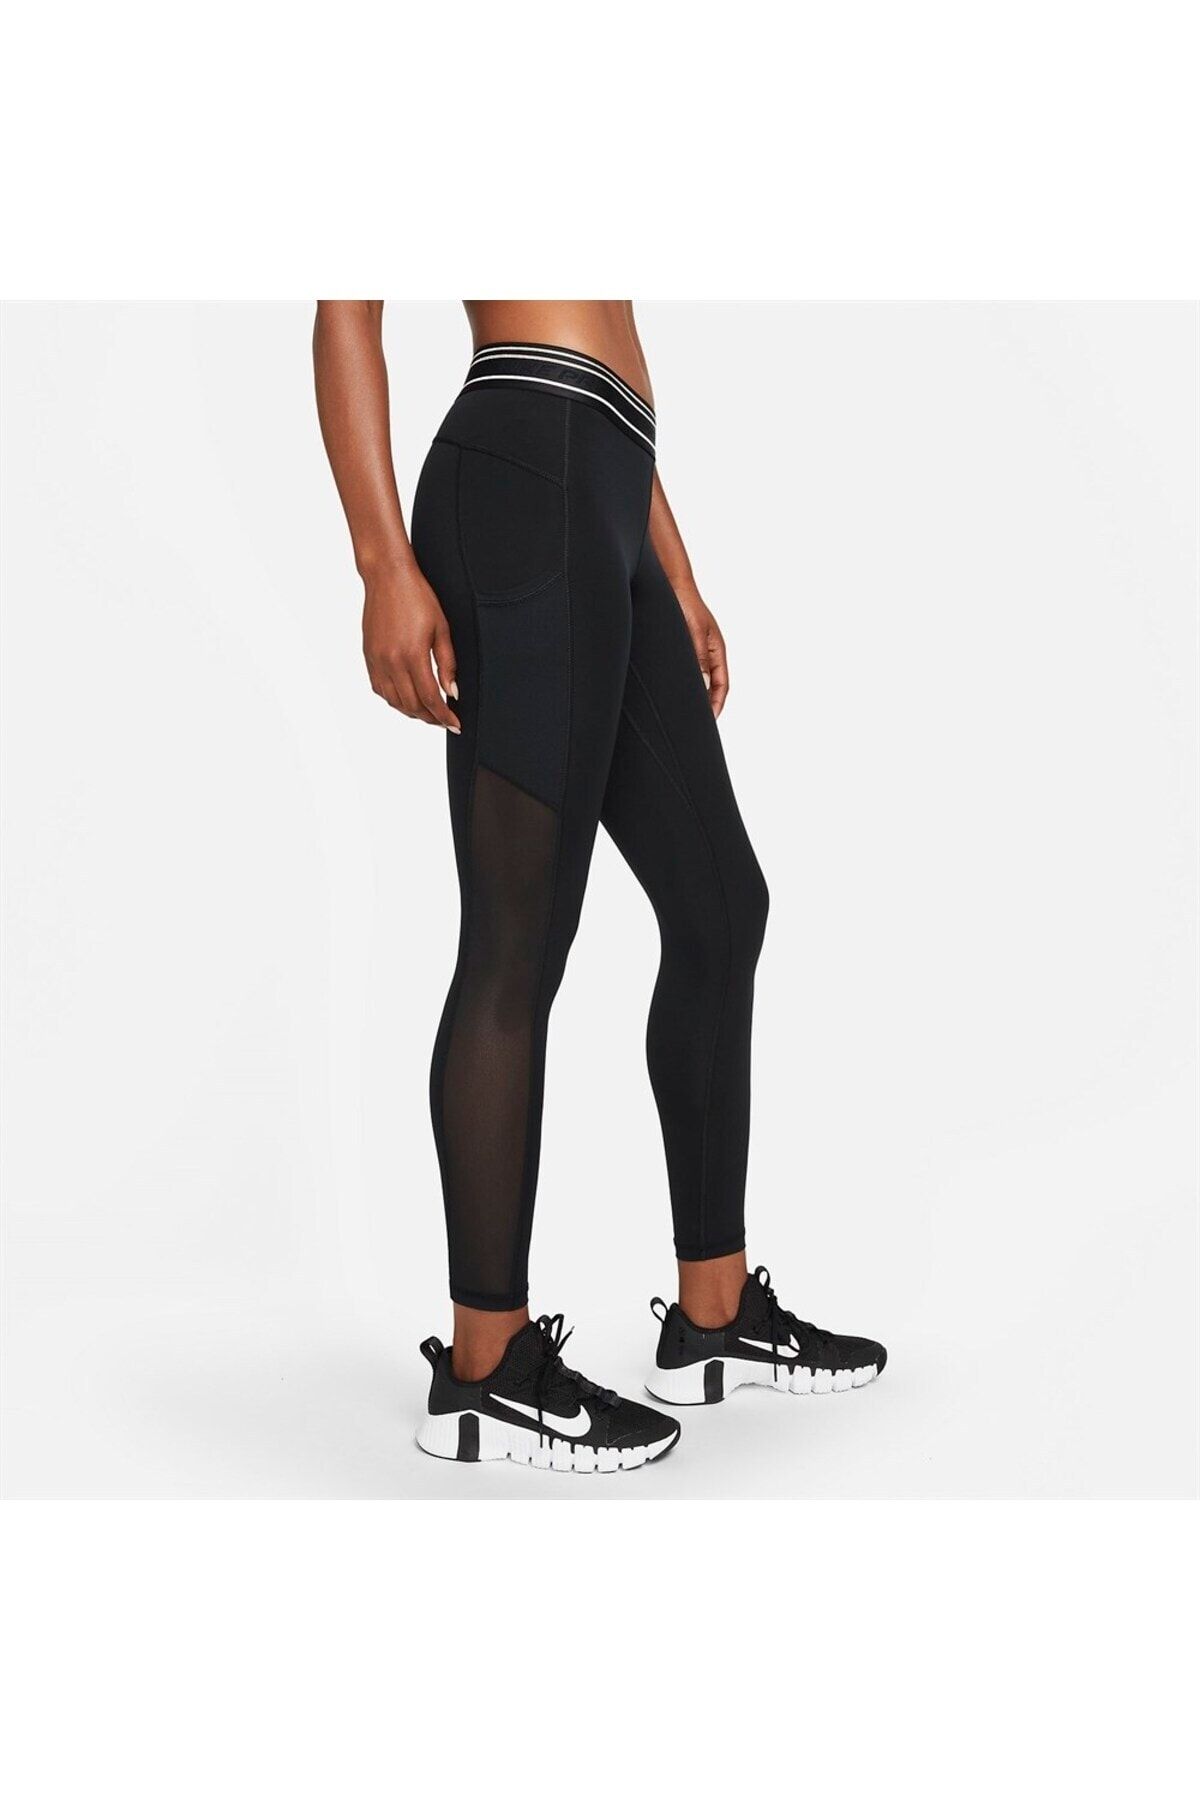 Nike Pro Dri-Fit Mid-Rise Pocket Women's Tights